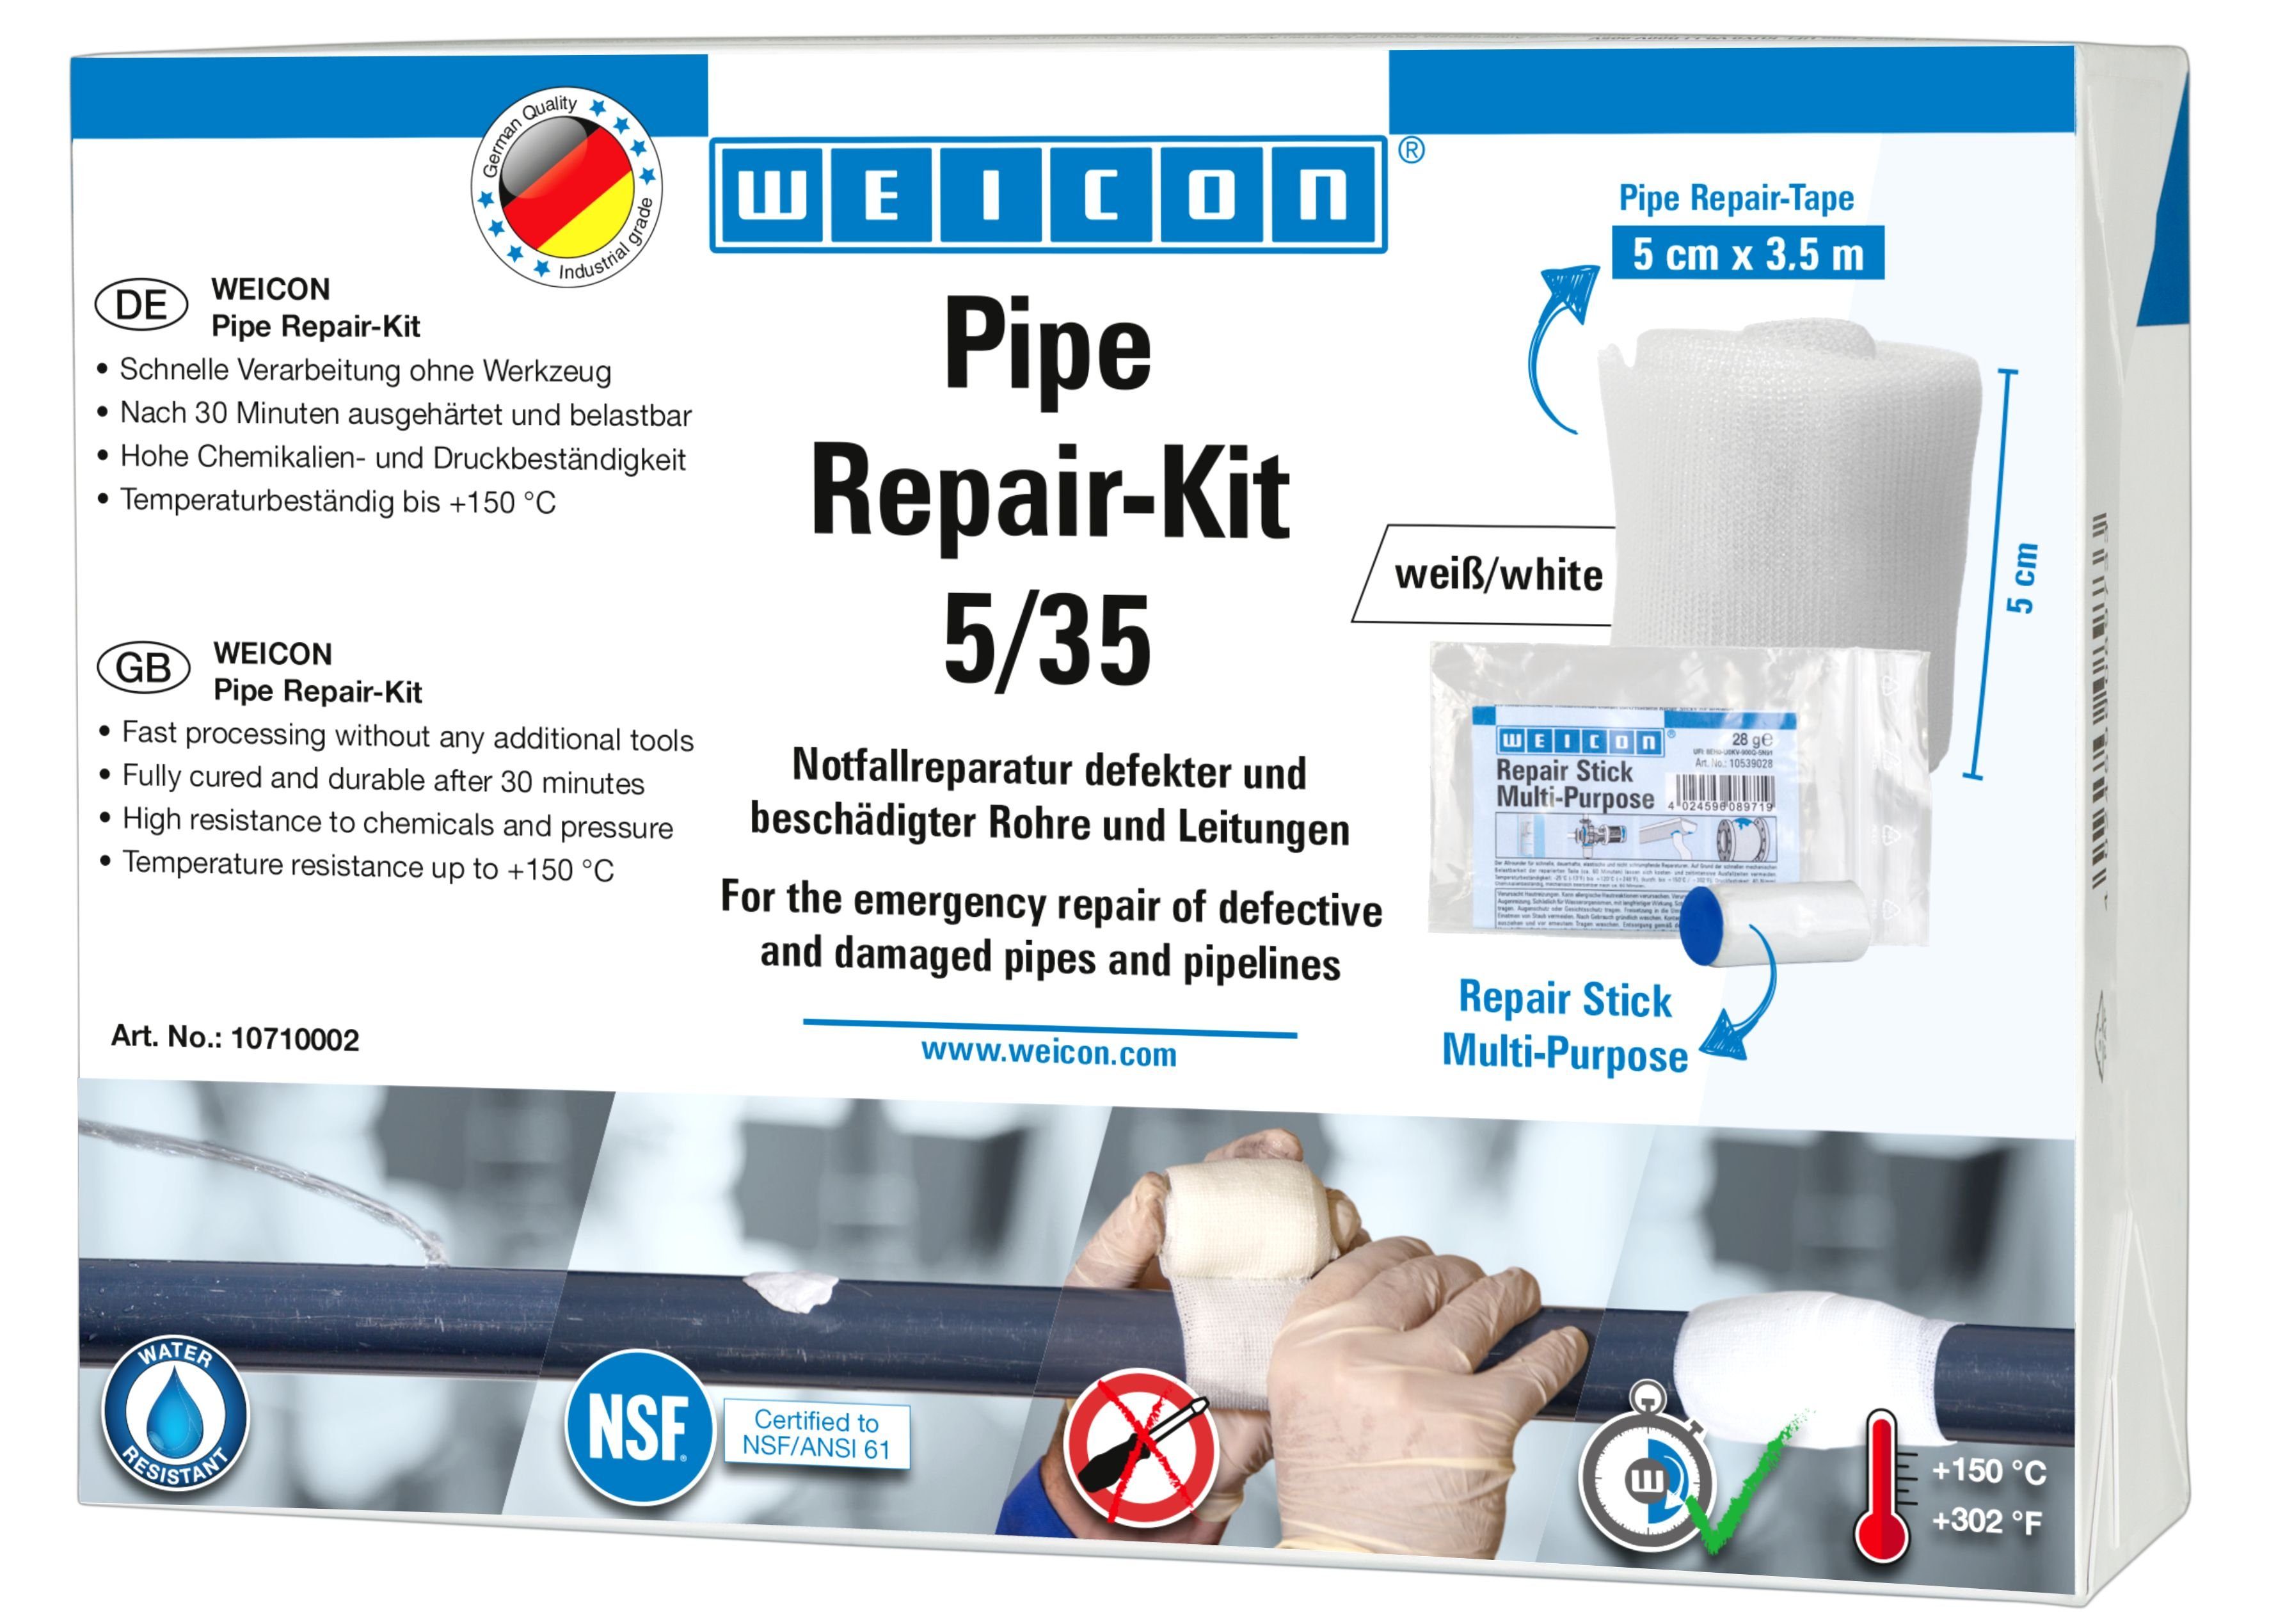 WEICON Reparatur-Set 5 beschädigter Pipe cm Repair-Kit, 3,5 m Leitungen und Notfall-Reparatur x Rohre